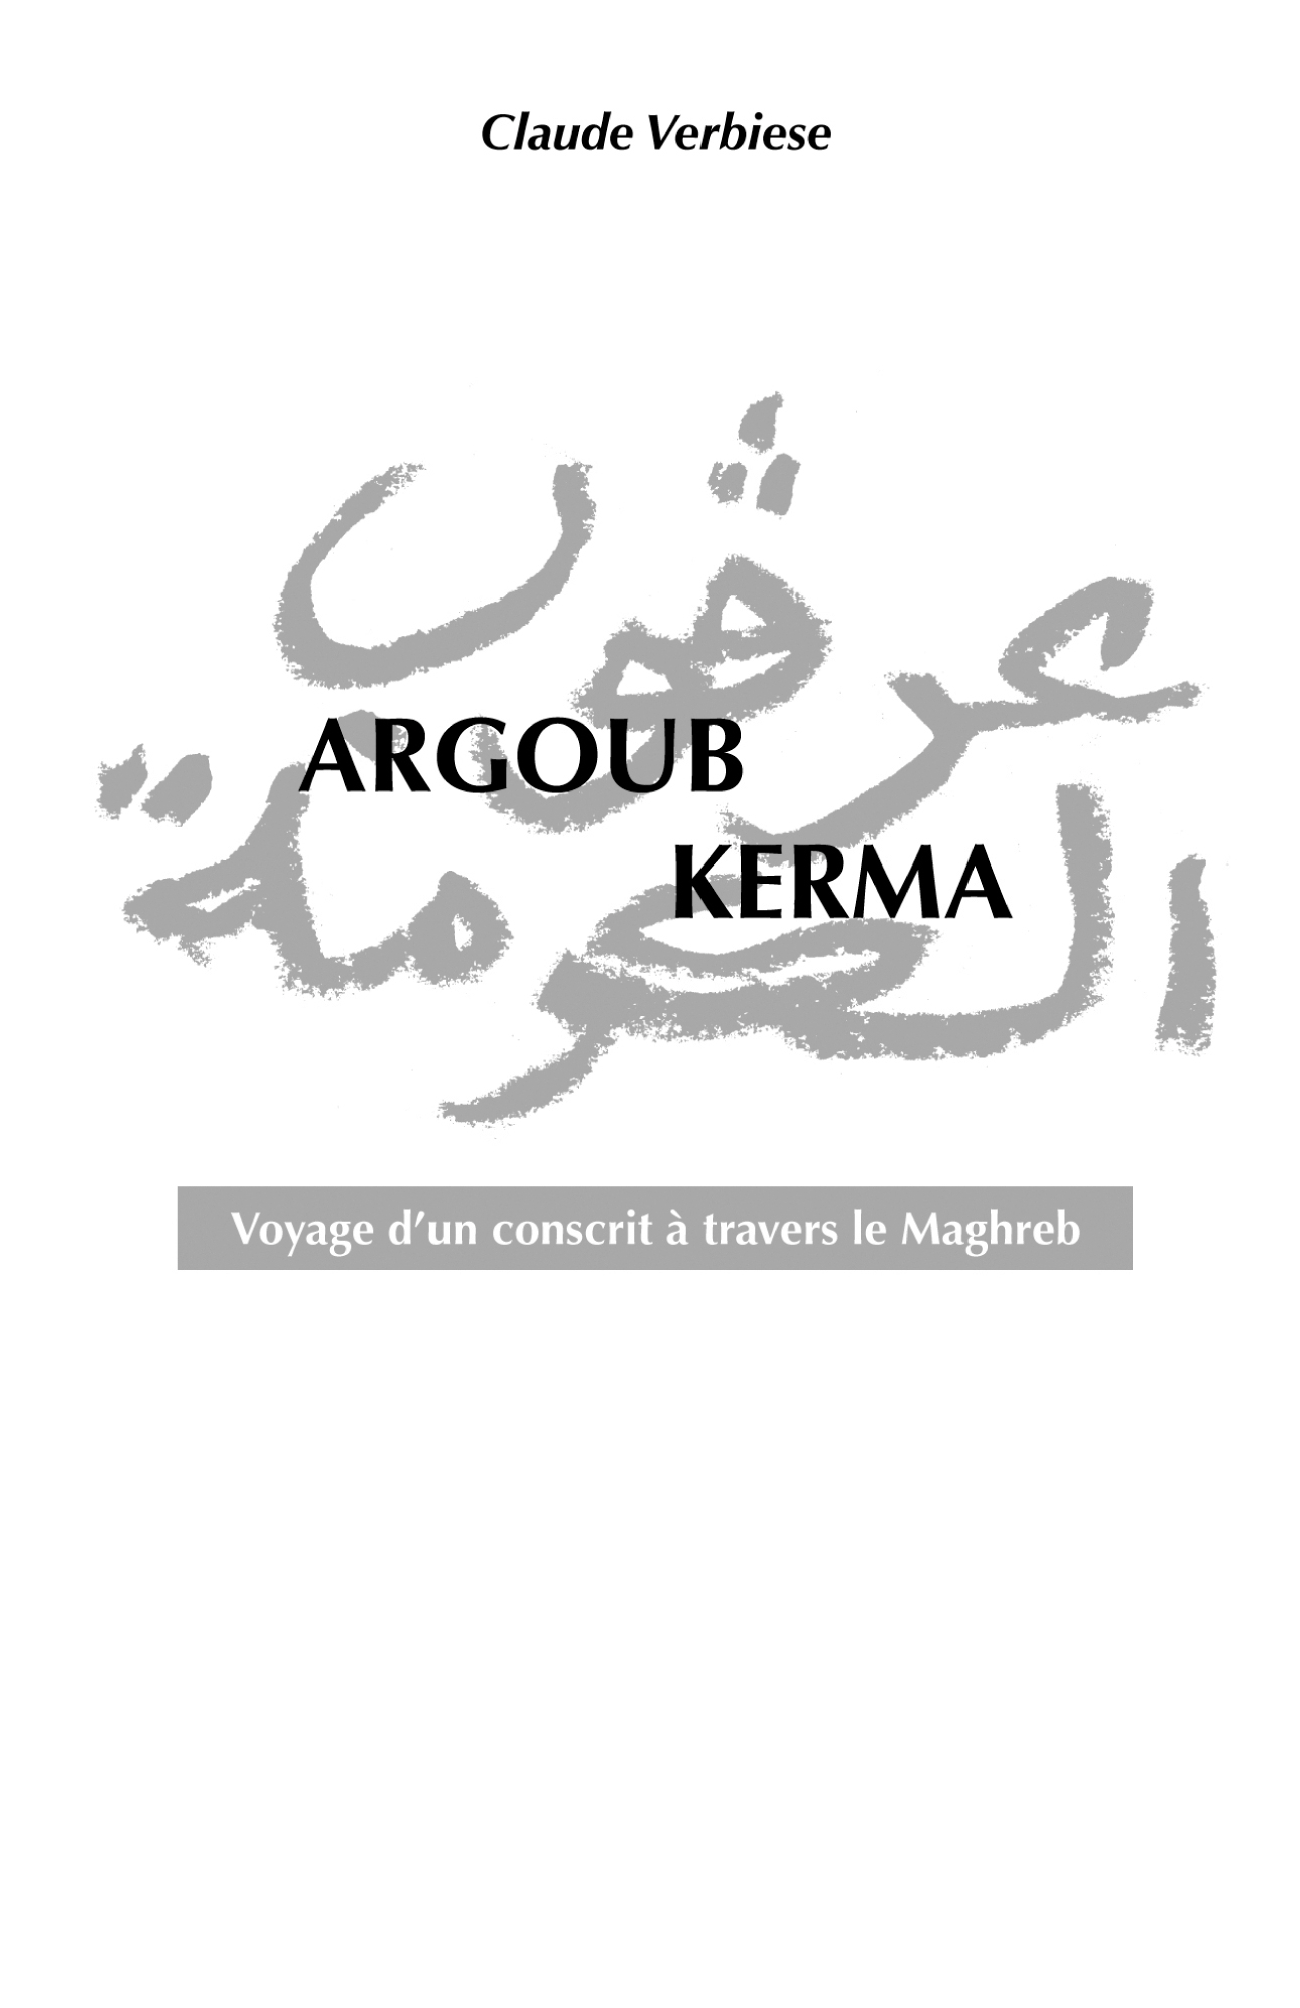 ARGOUB KERMA